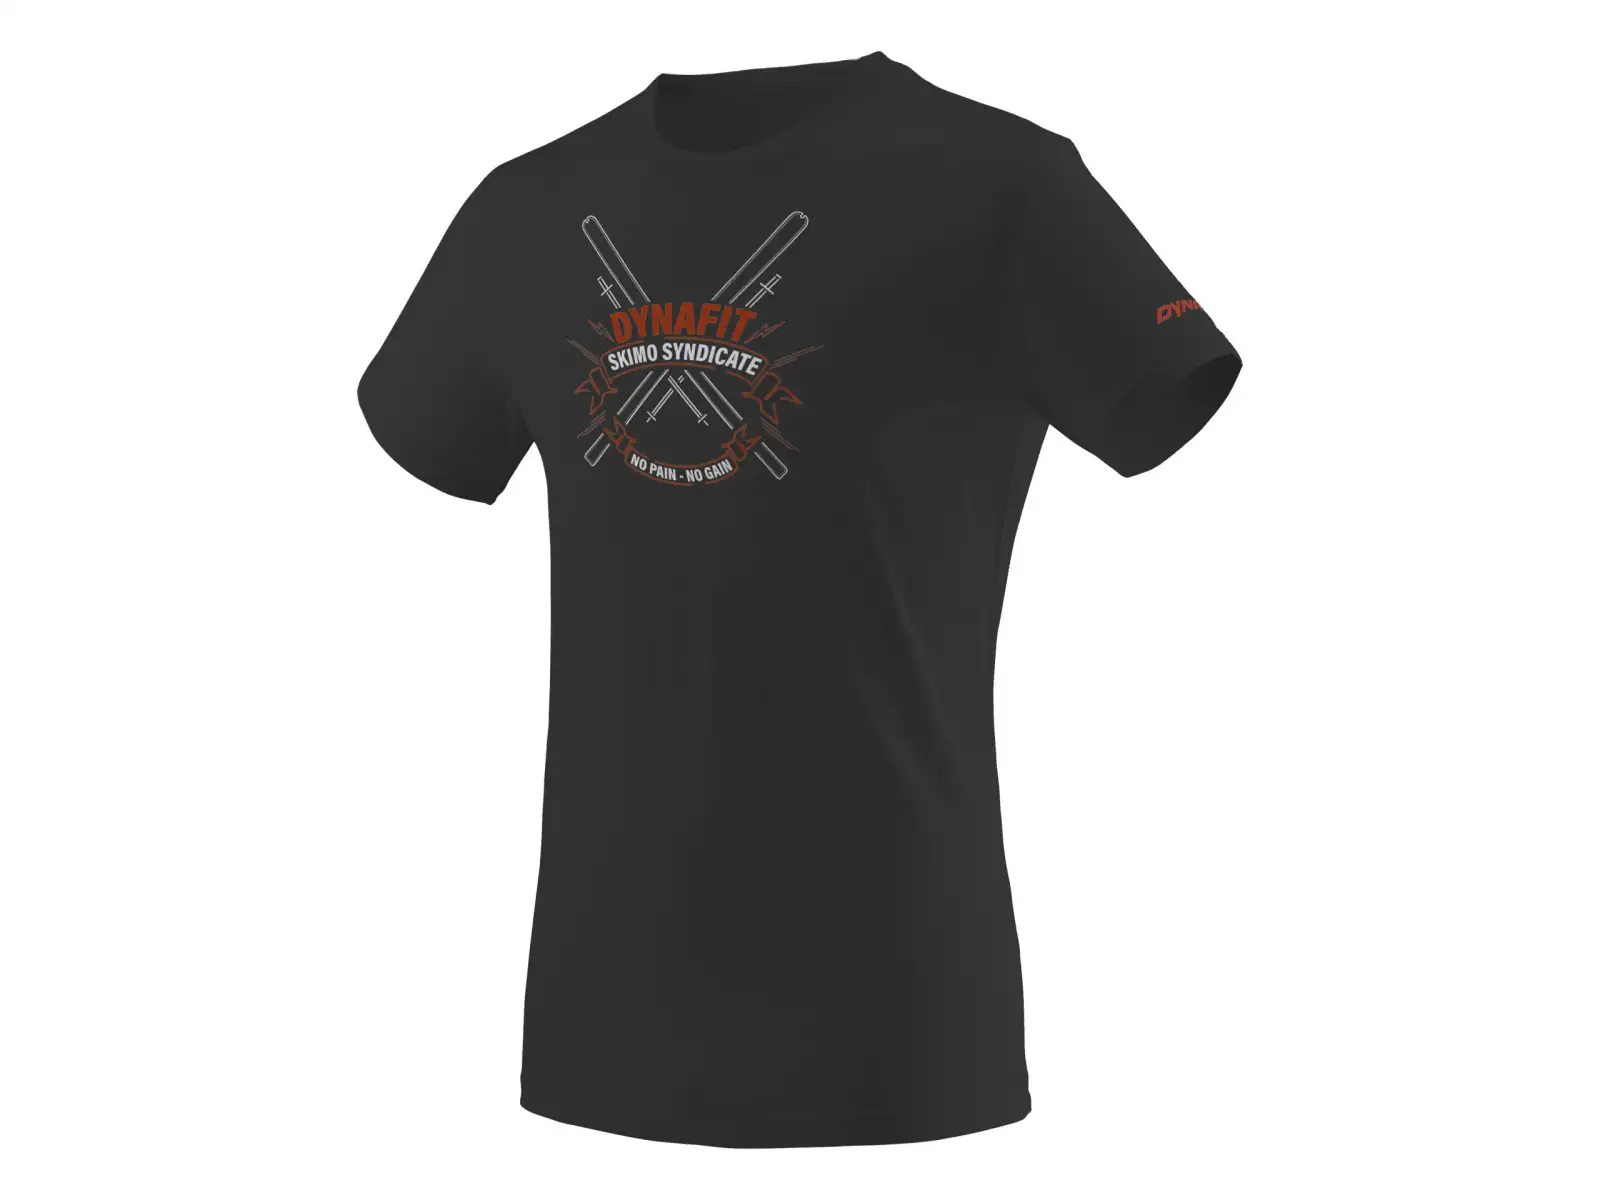 Dynafit Graphic Cotton M pánské triko s krátkým rukávem black out/SKIMO 2021